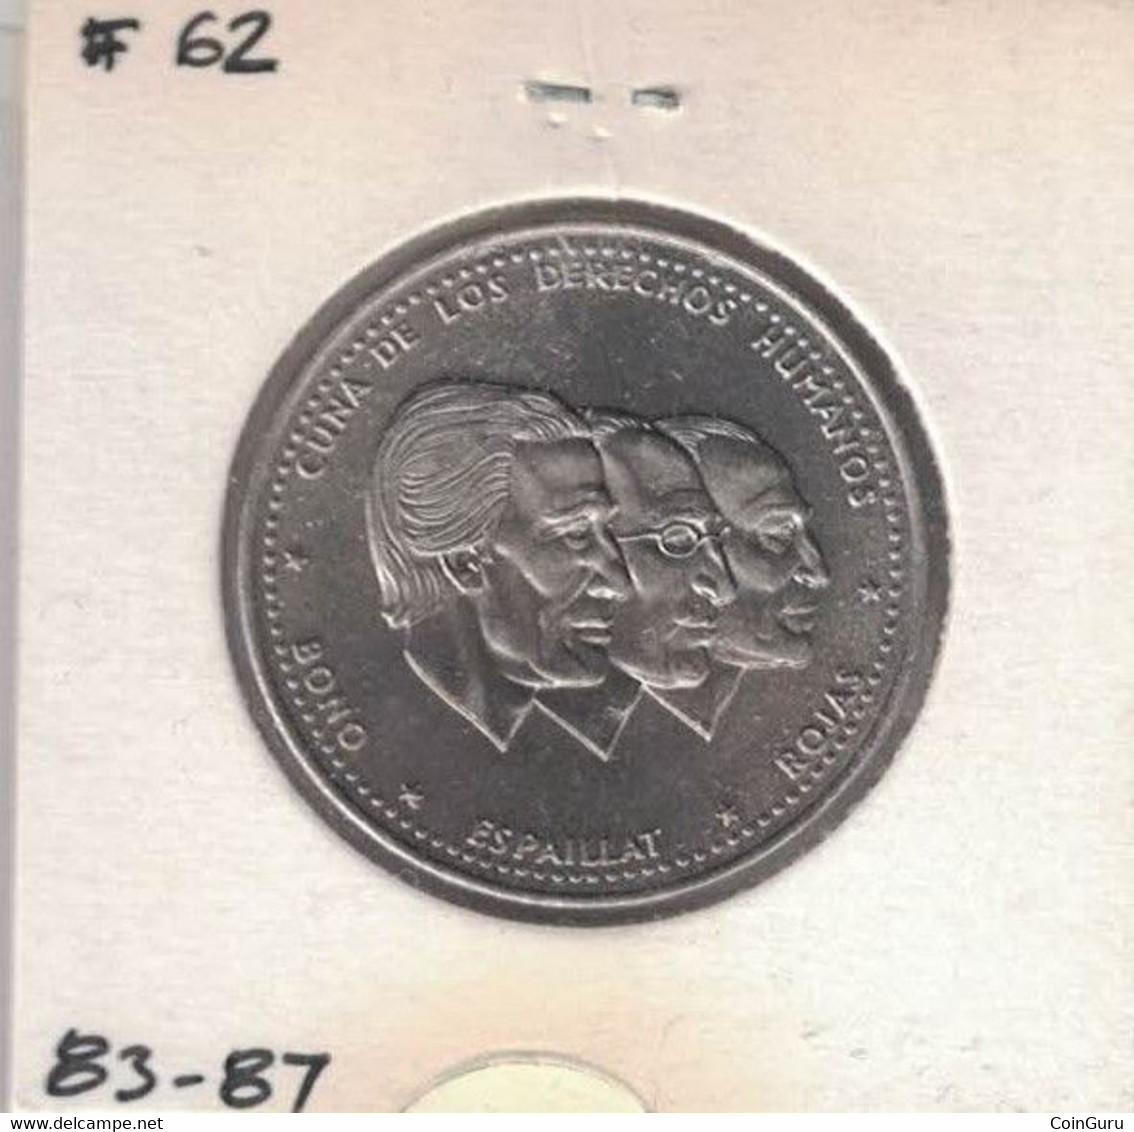 Dominicana 1/2 Peso 1983 UNC KM#62 - Dominicaine